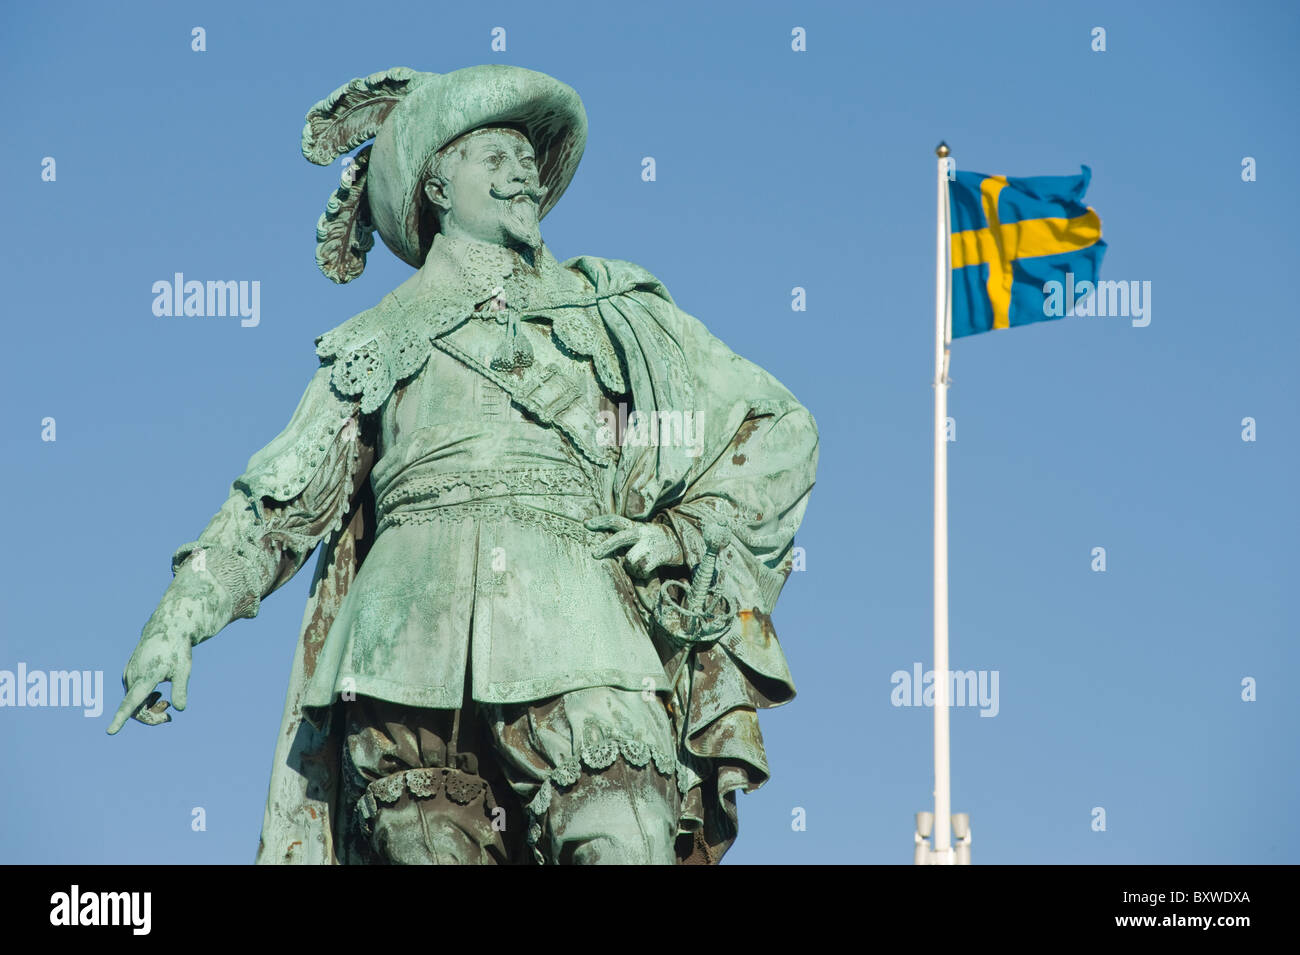 Statue du roi Gustavus Adolphus de Suède, sur la place Gustavus Adolphus, avec le drapeau national suédois, Göteborg, Suède. Banque D'Images